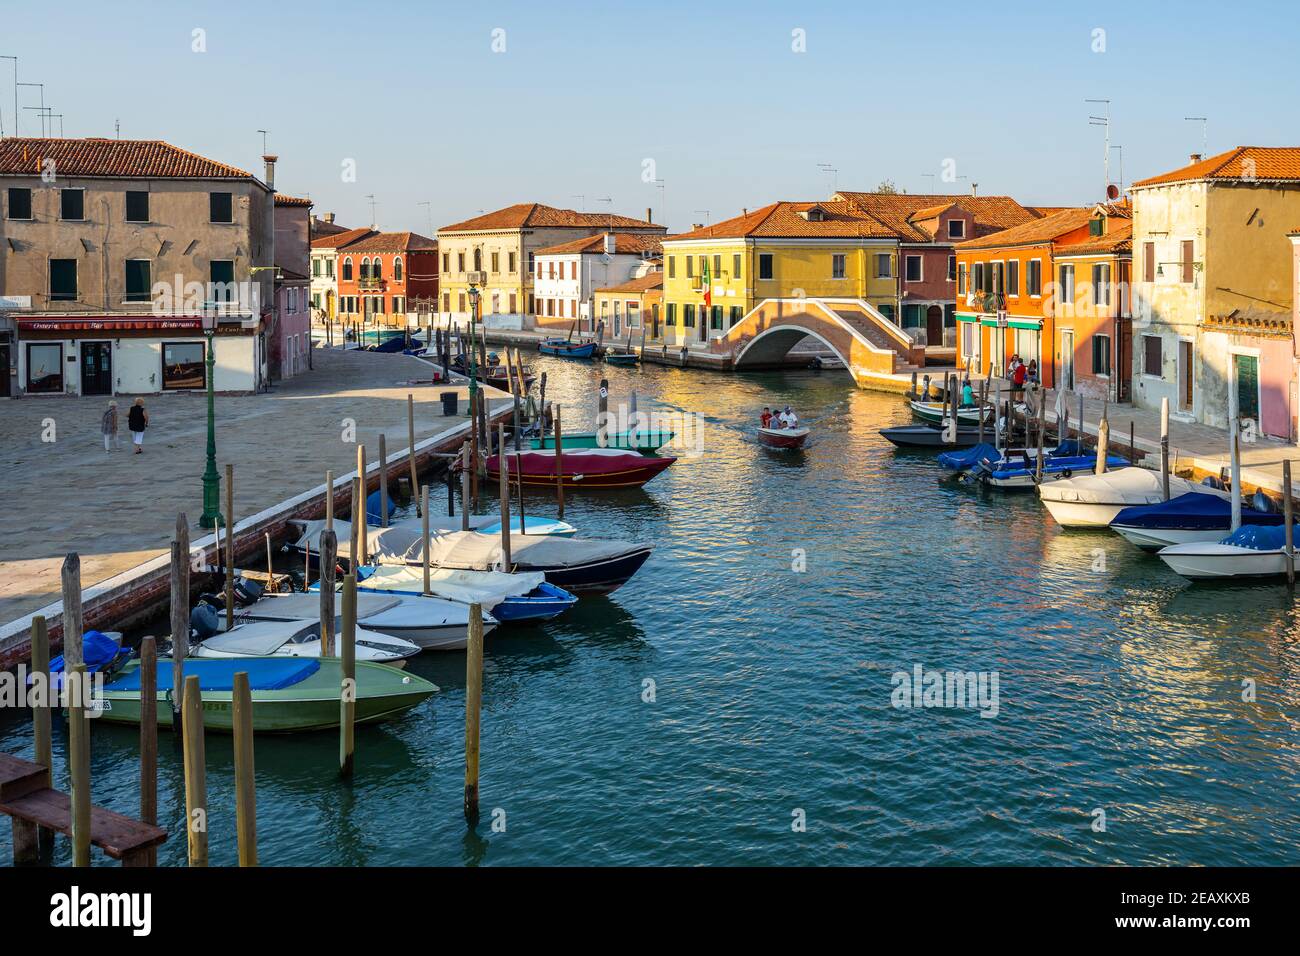 Murano, Venise, Italie, septembre 2020. Un petit bateau naviguant sur un canal typique de l'île de Murano Banque D'Images